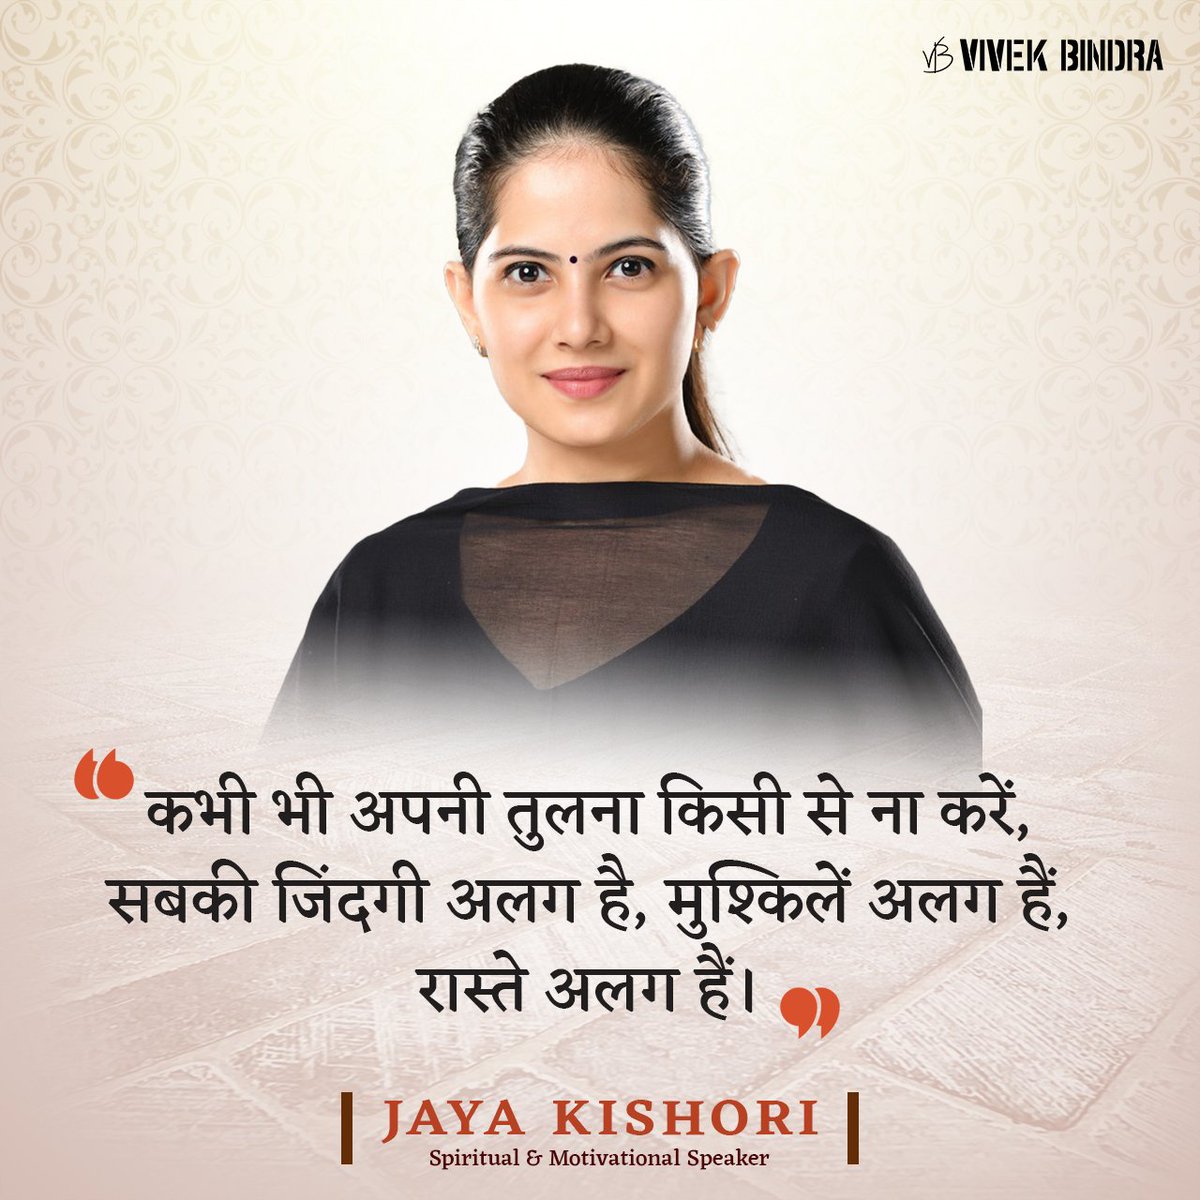 हर इंसान की योग्यताएँ अलग-अलग होती हैं, इसलिए कभी भी दूसरों के साथ तुलना नहीं करनी चाहिए।

#JayaKishori #LeaderWisdom #Motivation #DrVivekBindra #BadaBusiness